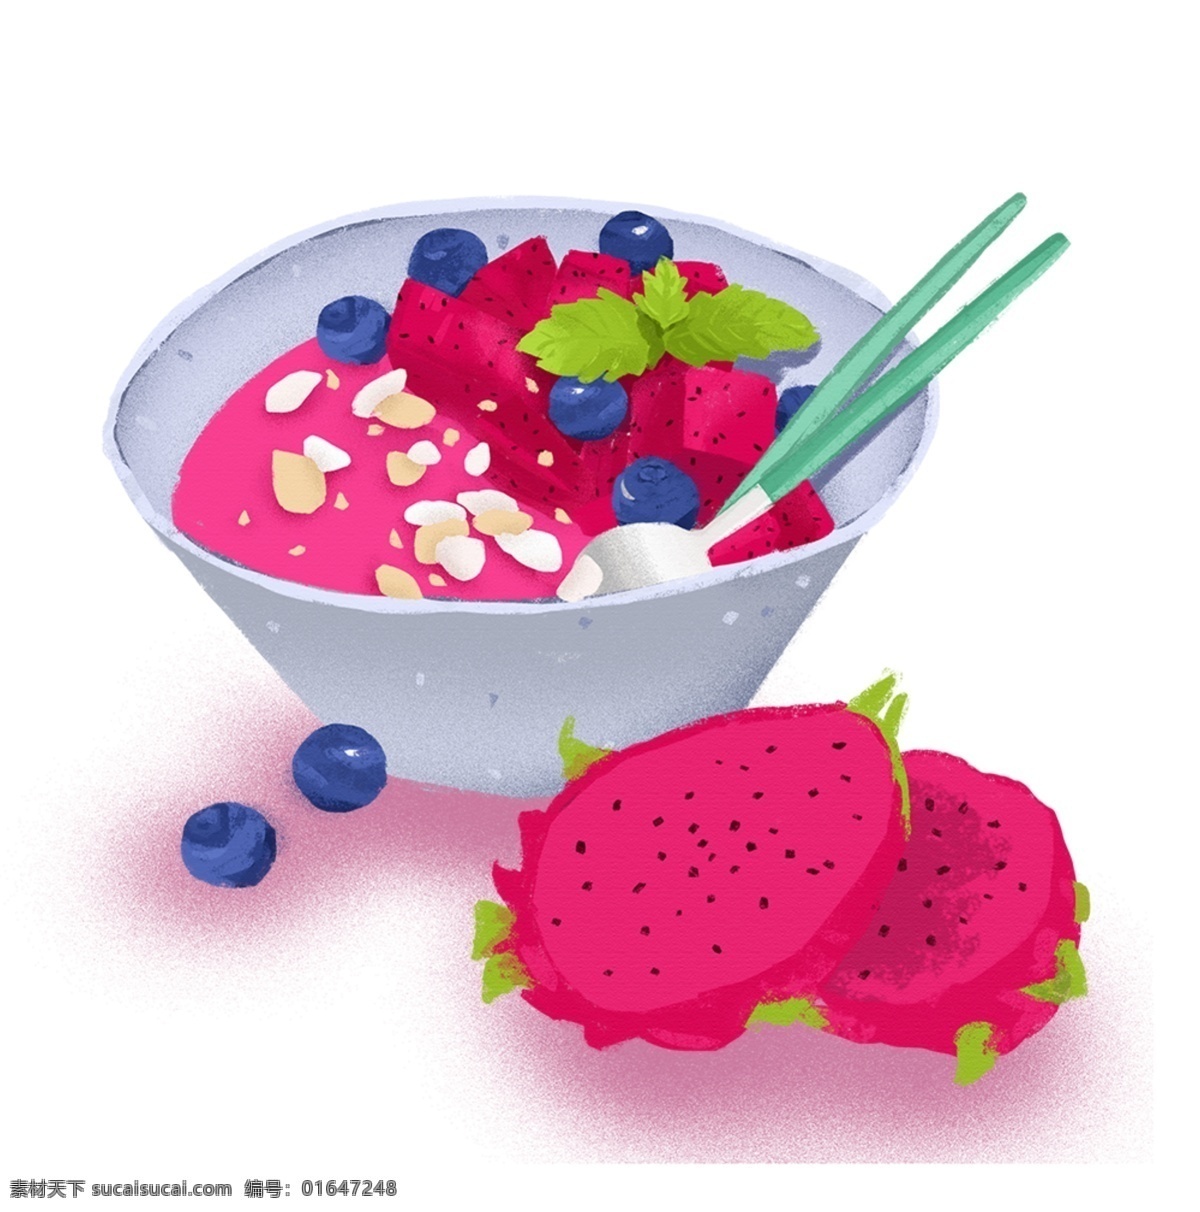 火龙果 甜品 卡通 插画 手绘 精美 海报插画 广告插画 小清新 简约风 装饰图案